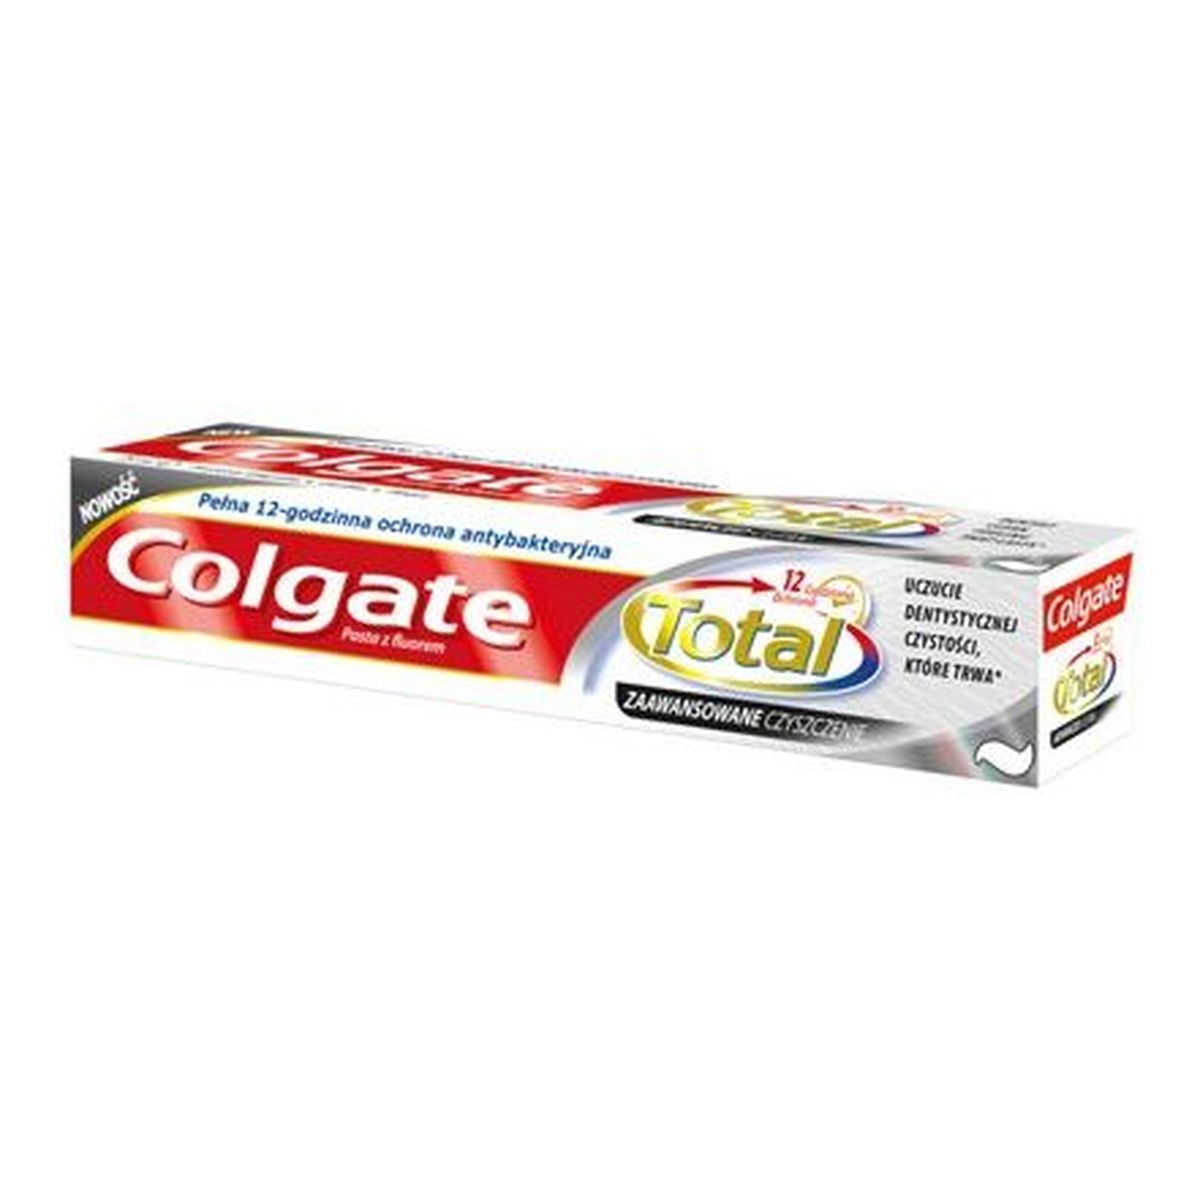 Colgate Total Pasta Do Zębów Zaawansowane Czyszczenie 75ml